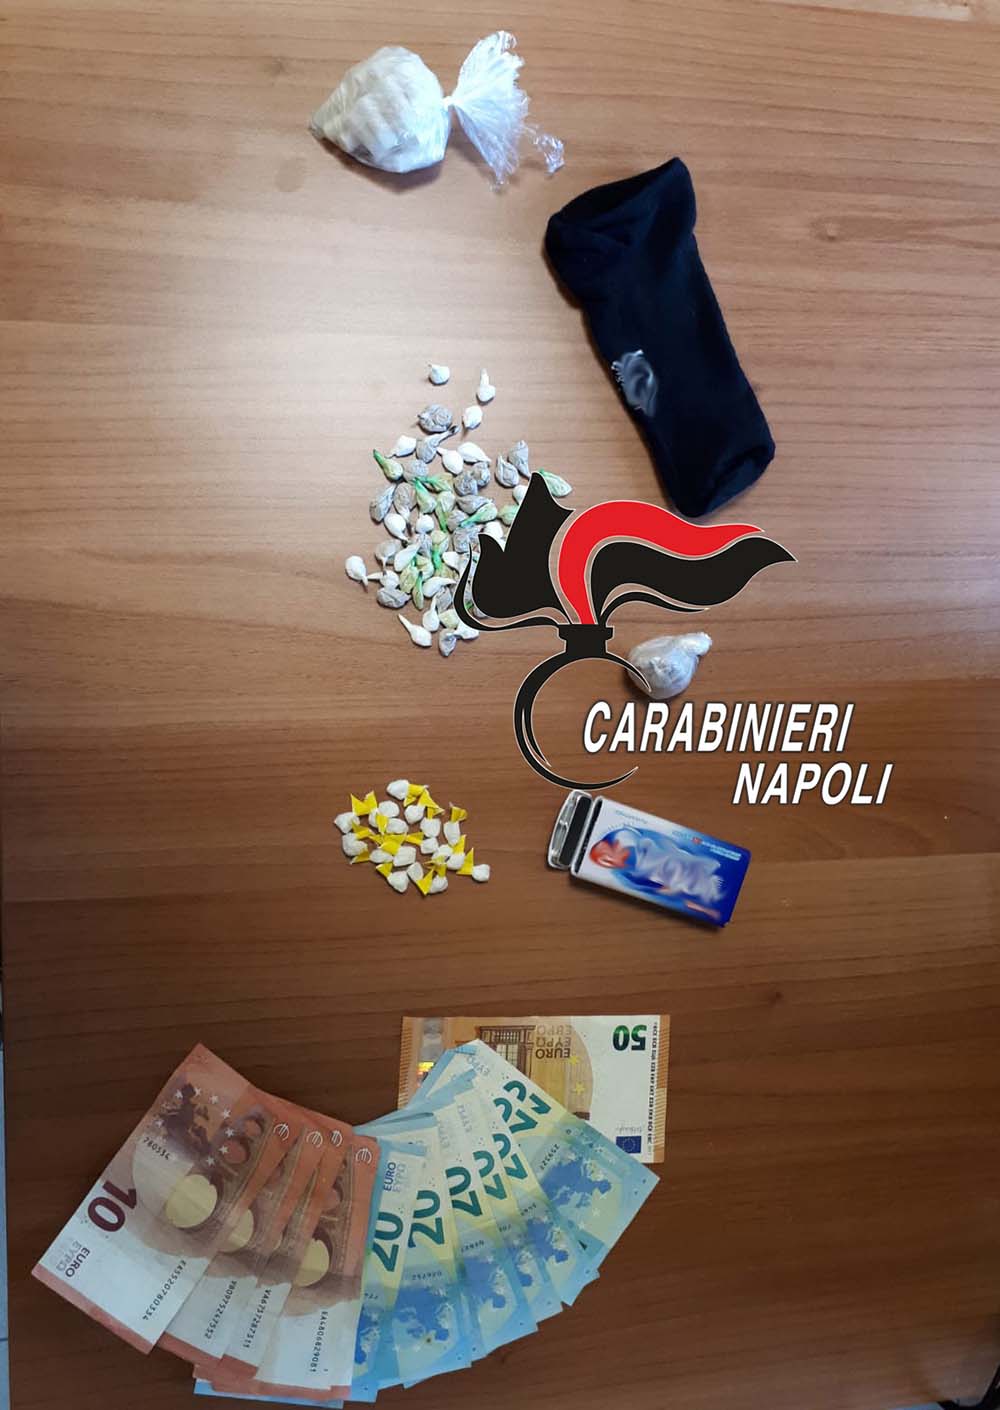 Napoli, spacciava nel lotto T/B di Scampia: arrestato 24enne